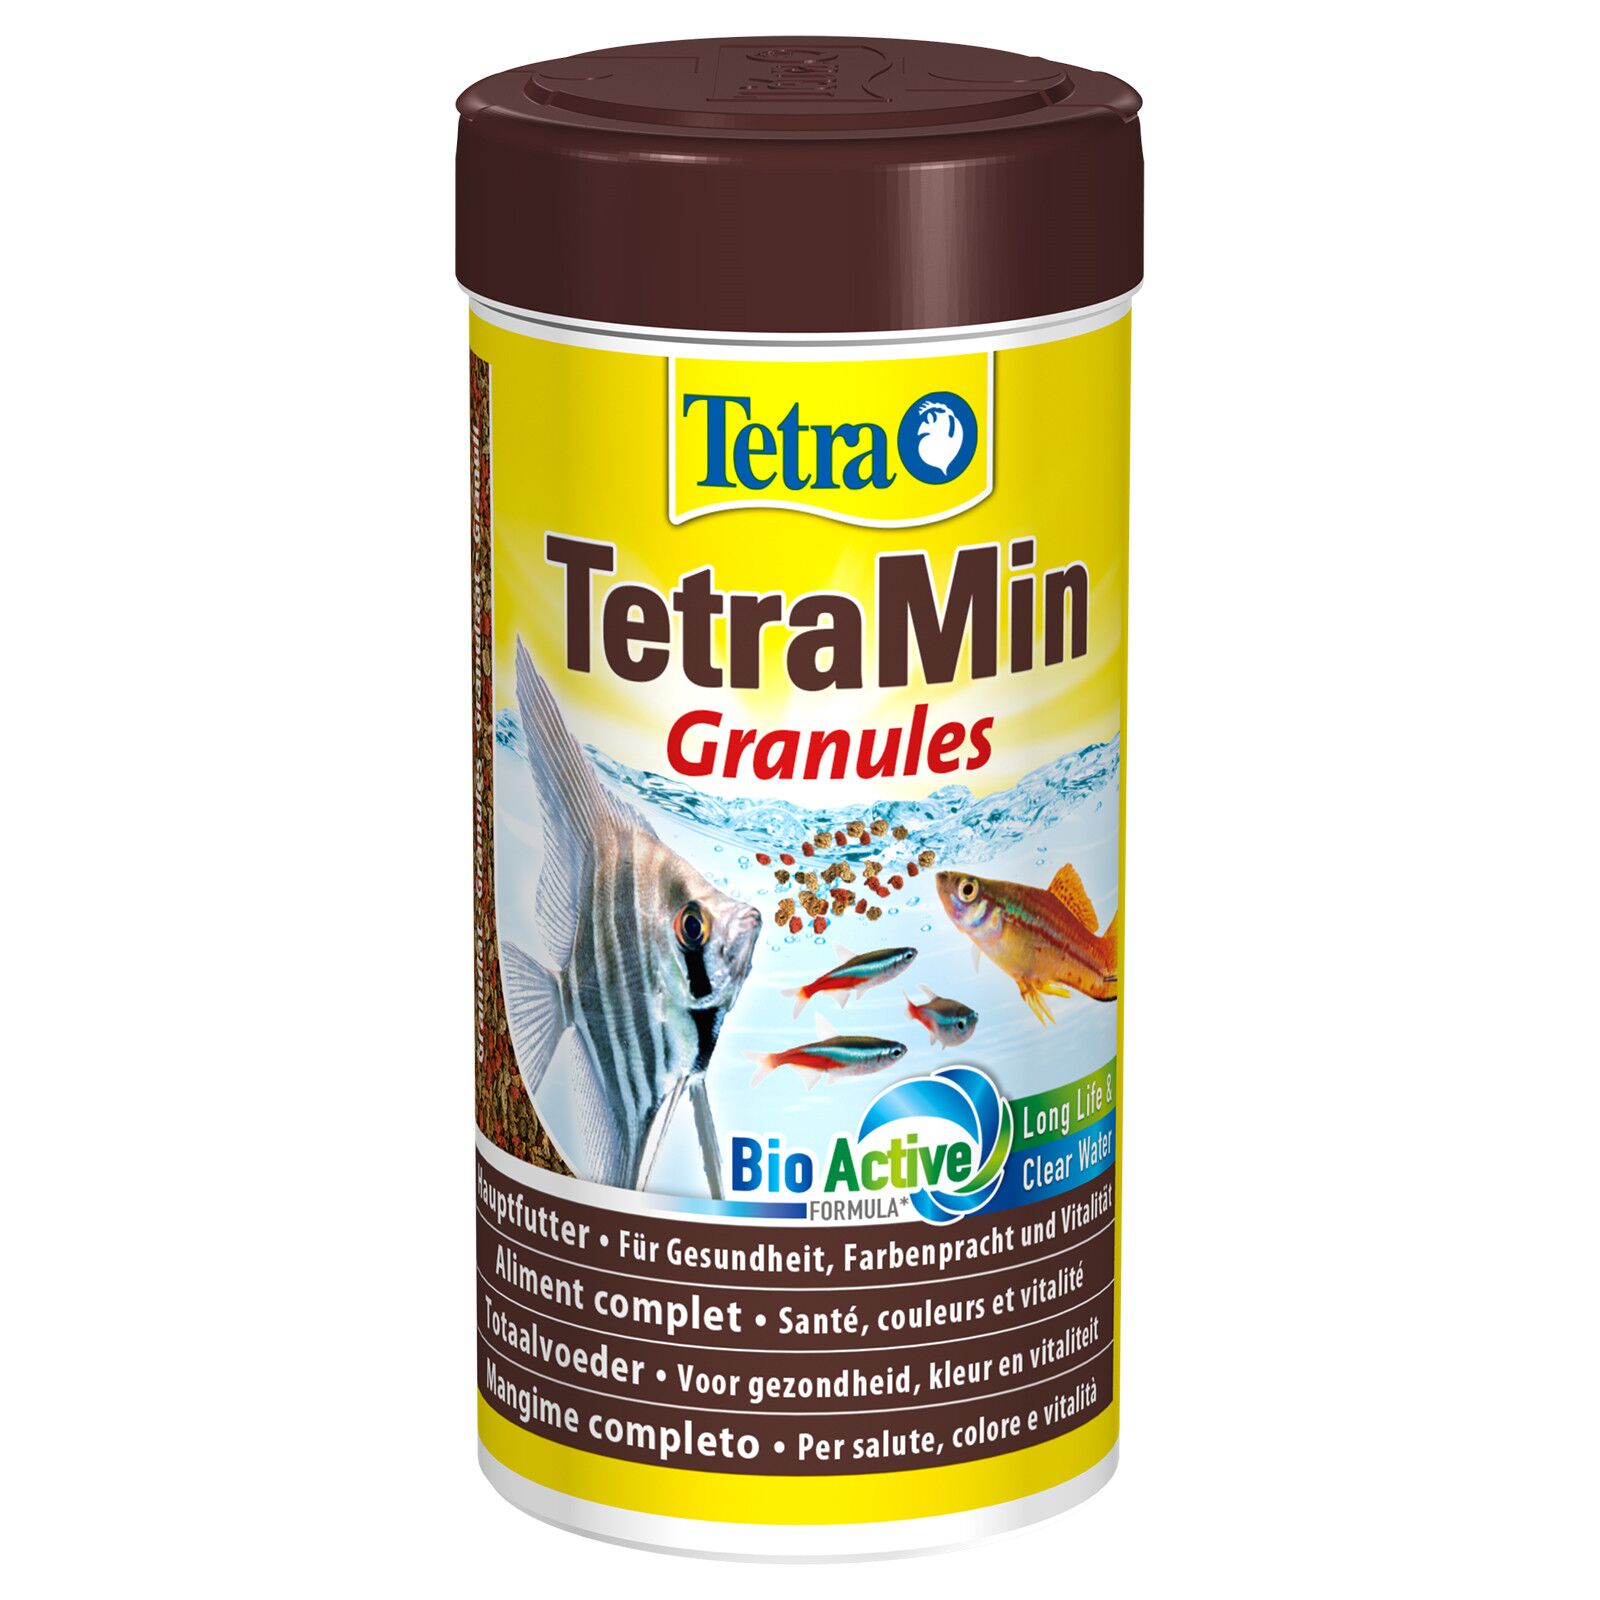 TETRA TetraMin - 250ml — jzxonline